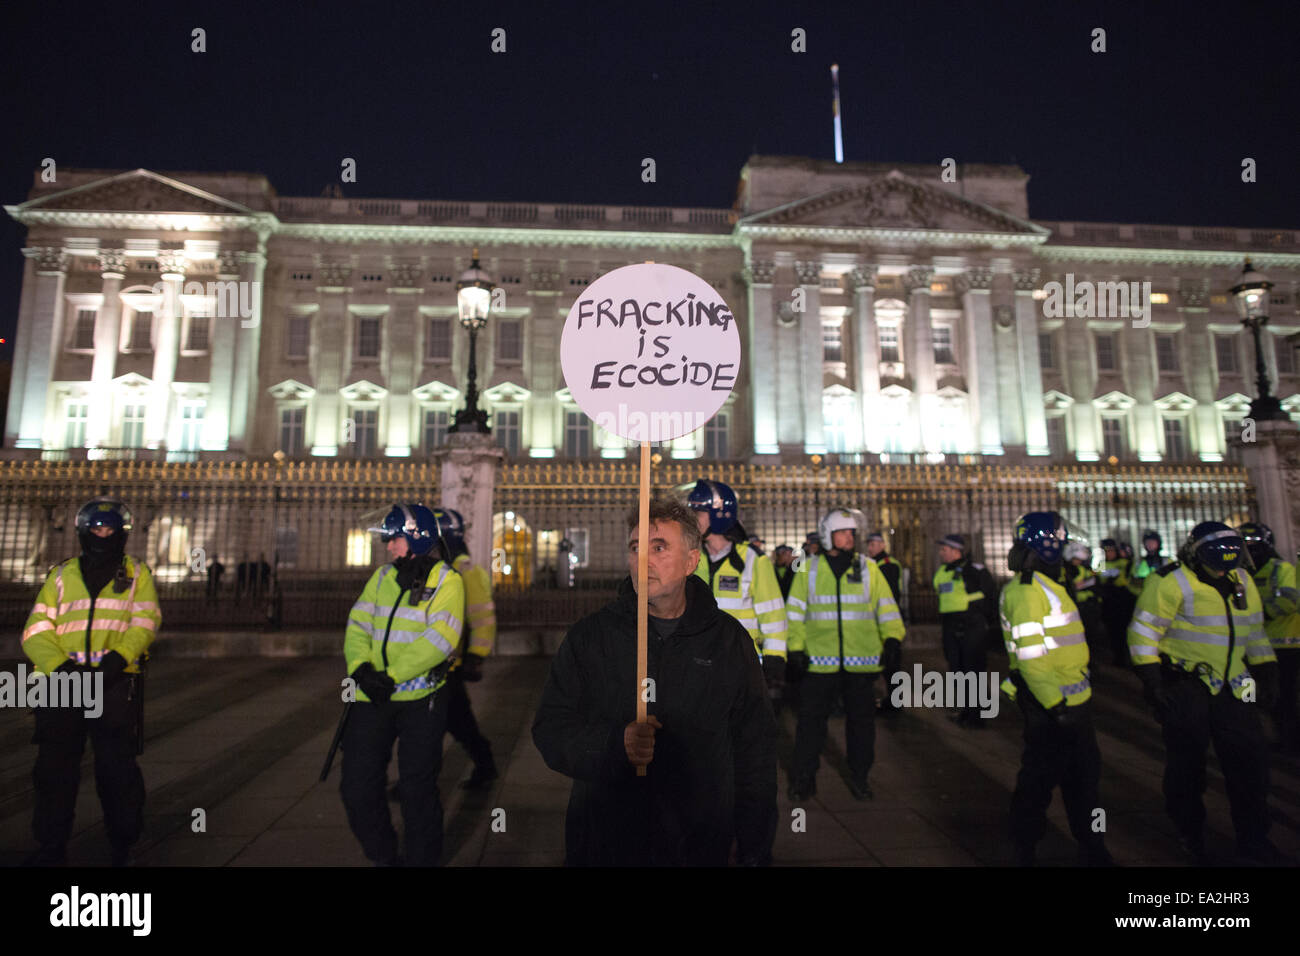 Milioni di maschera - marzo Londra REGNO UNITO 05.11.2014 Foto mostra dimostranti fuori Buckingham Palace di Londra centrale, parte dell'attivista anonimo gruppo "Maschera illion marzo' che minacciano il blocco di Londra stasera- marzo Londra UK. Credito: Jeff Gilbert/Alamy Live News Foto Stock